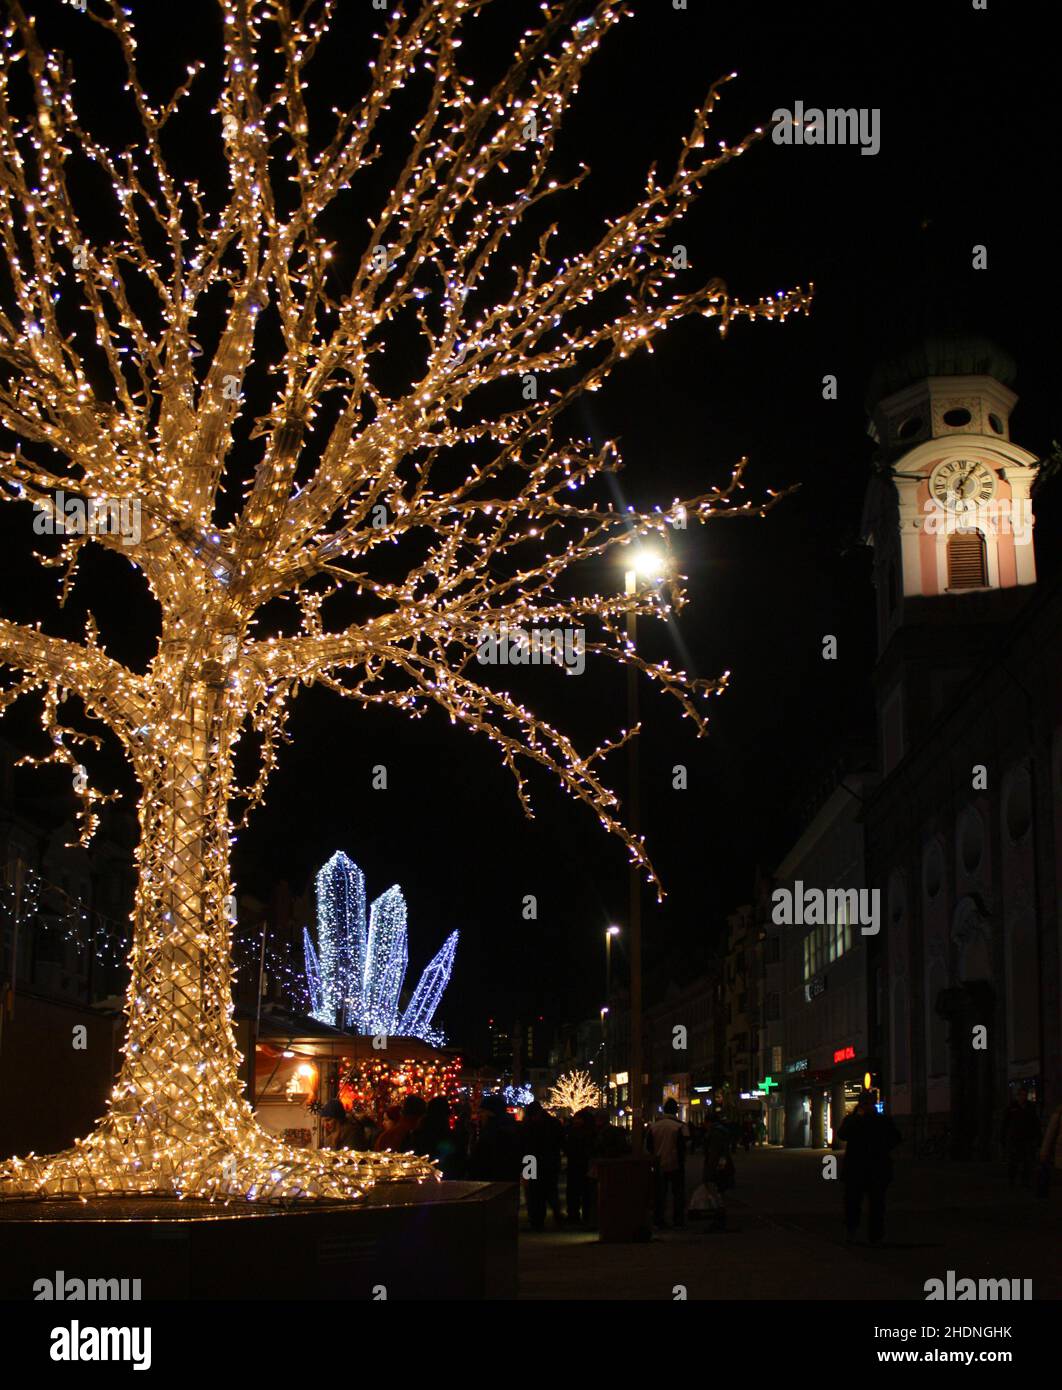 tree, illuminated, christmas, innsbruck, trees, illuminateds, merry christmas, x-mas, xmas, innsbrucks Stock Photo